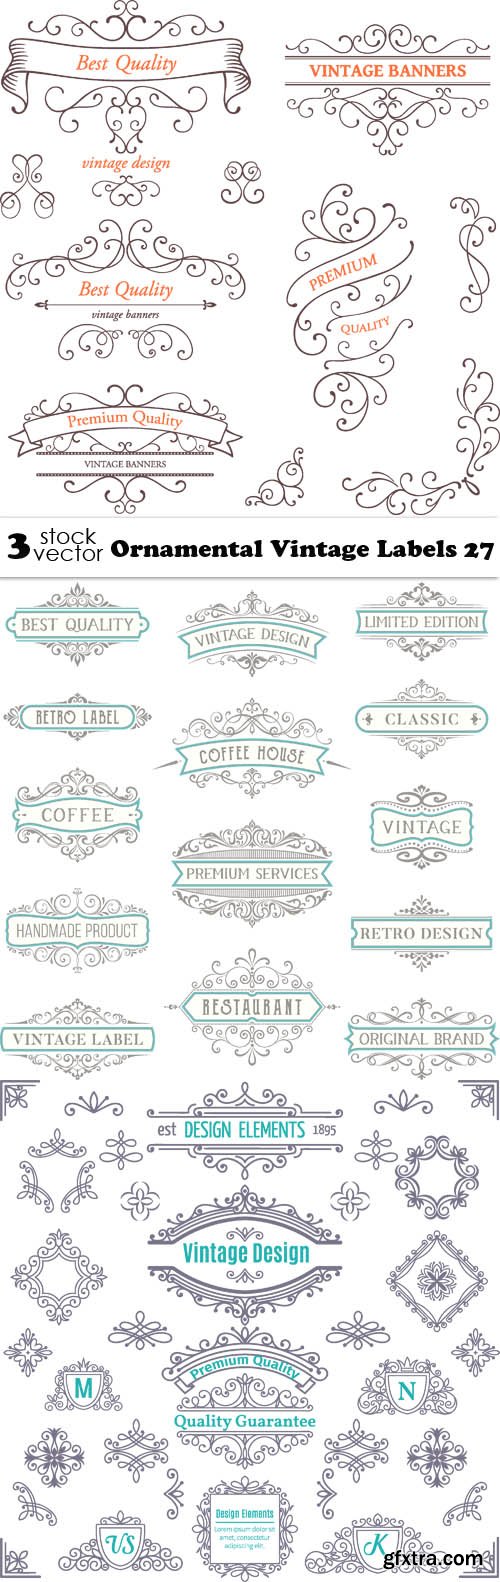 Vectors - Ornamental Vintage Labels 27